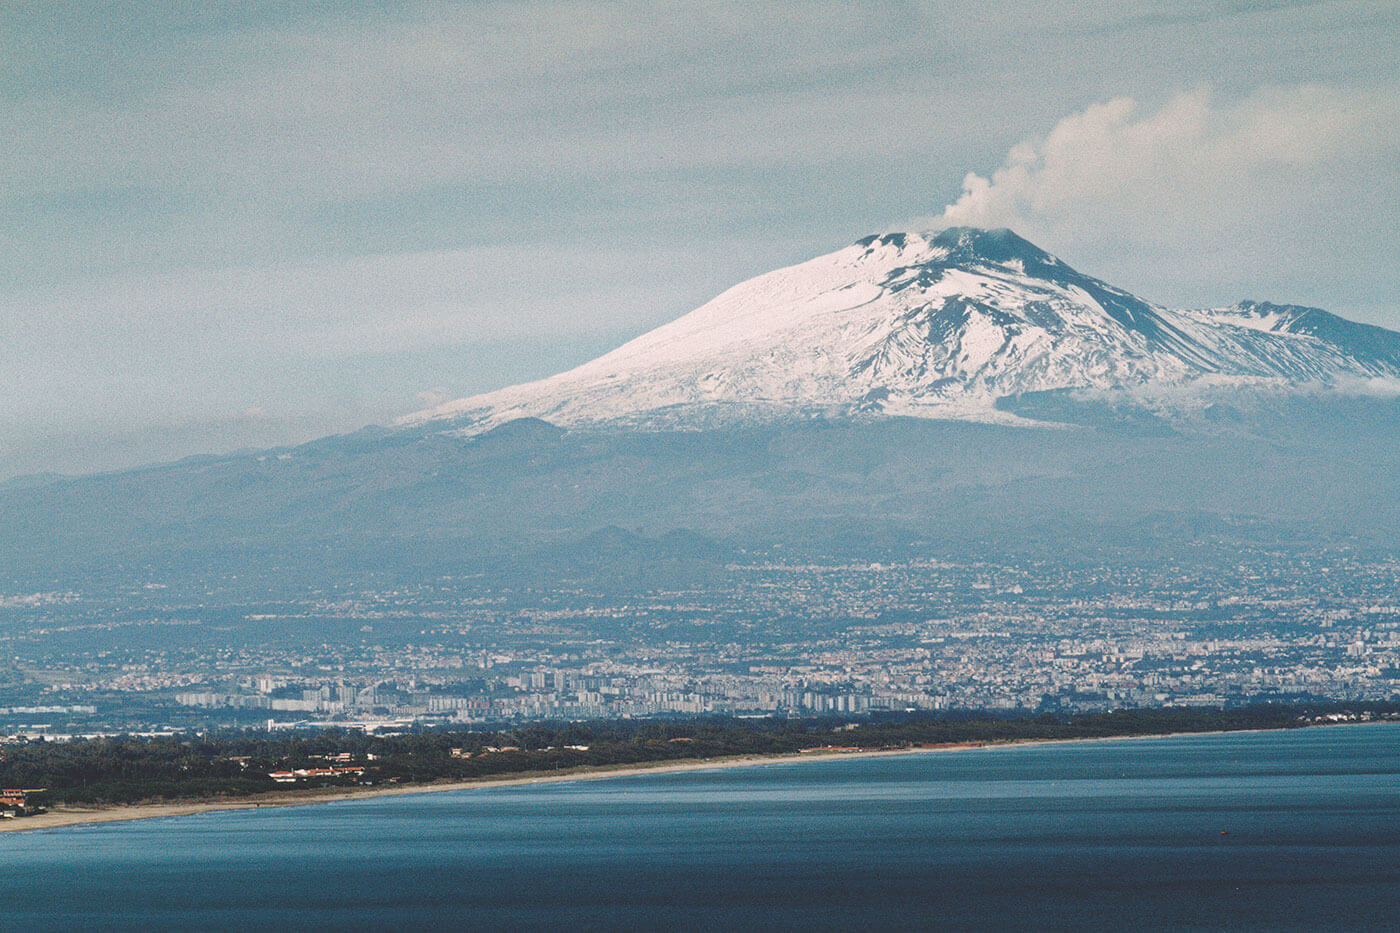 Volcano Etna - Italy and Sicily